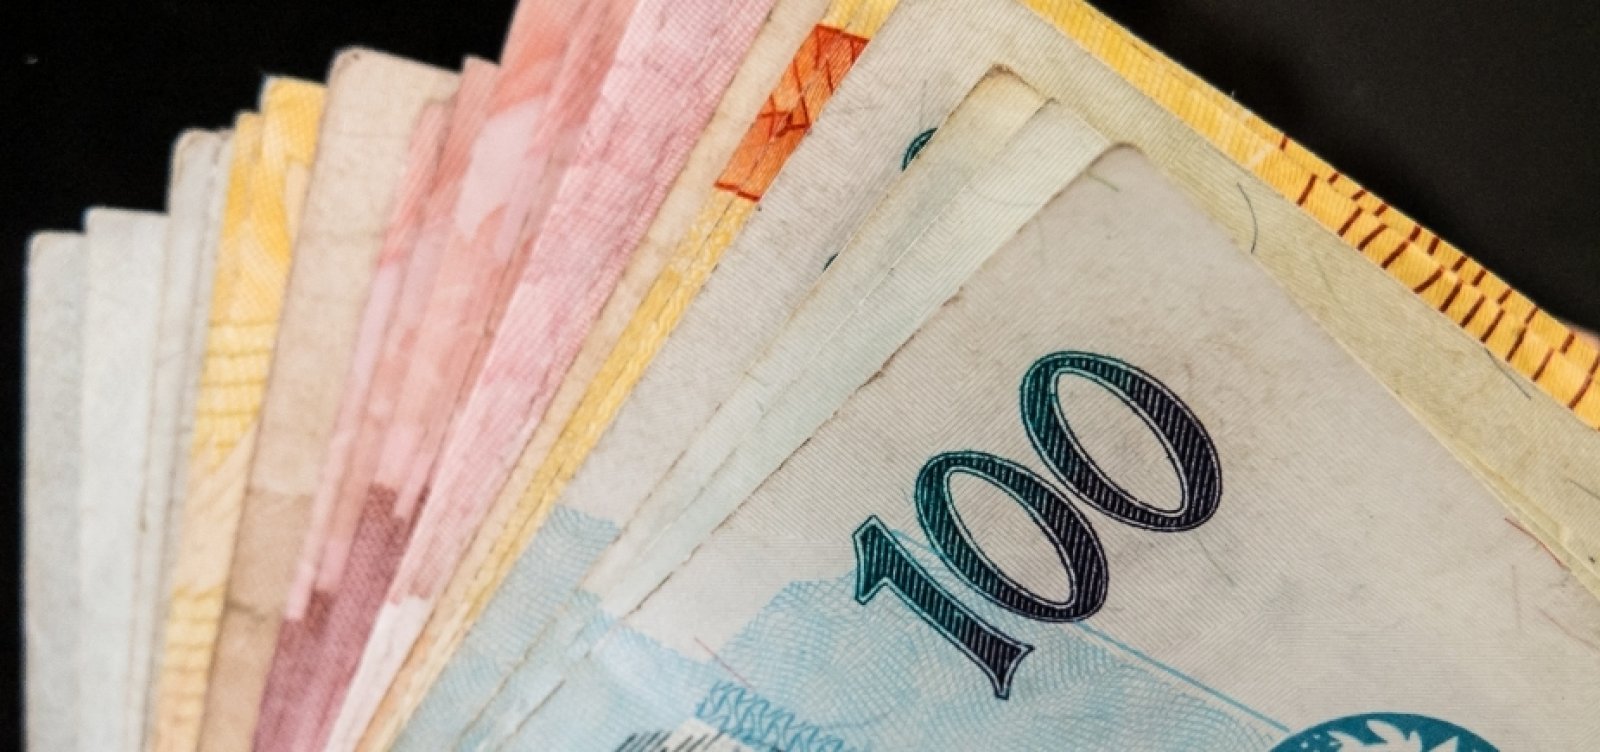 Rombo nas contas públicas pode ultrapassar os R$ 350 bi em 2020, diz governo